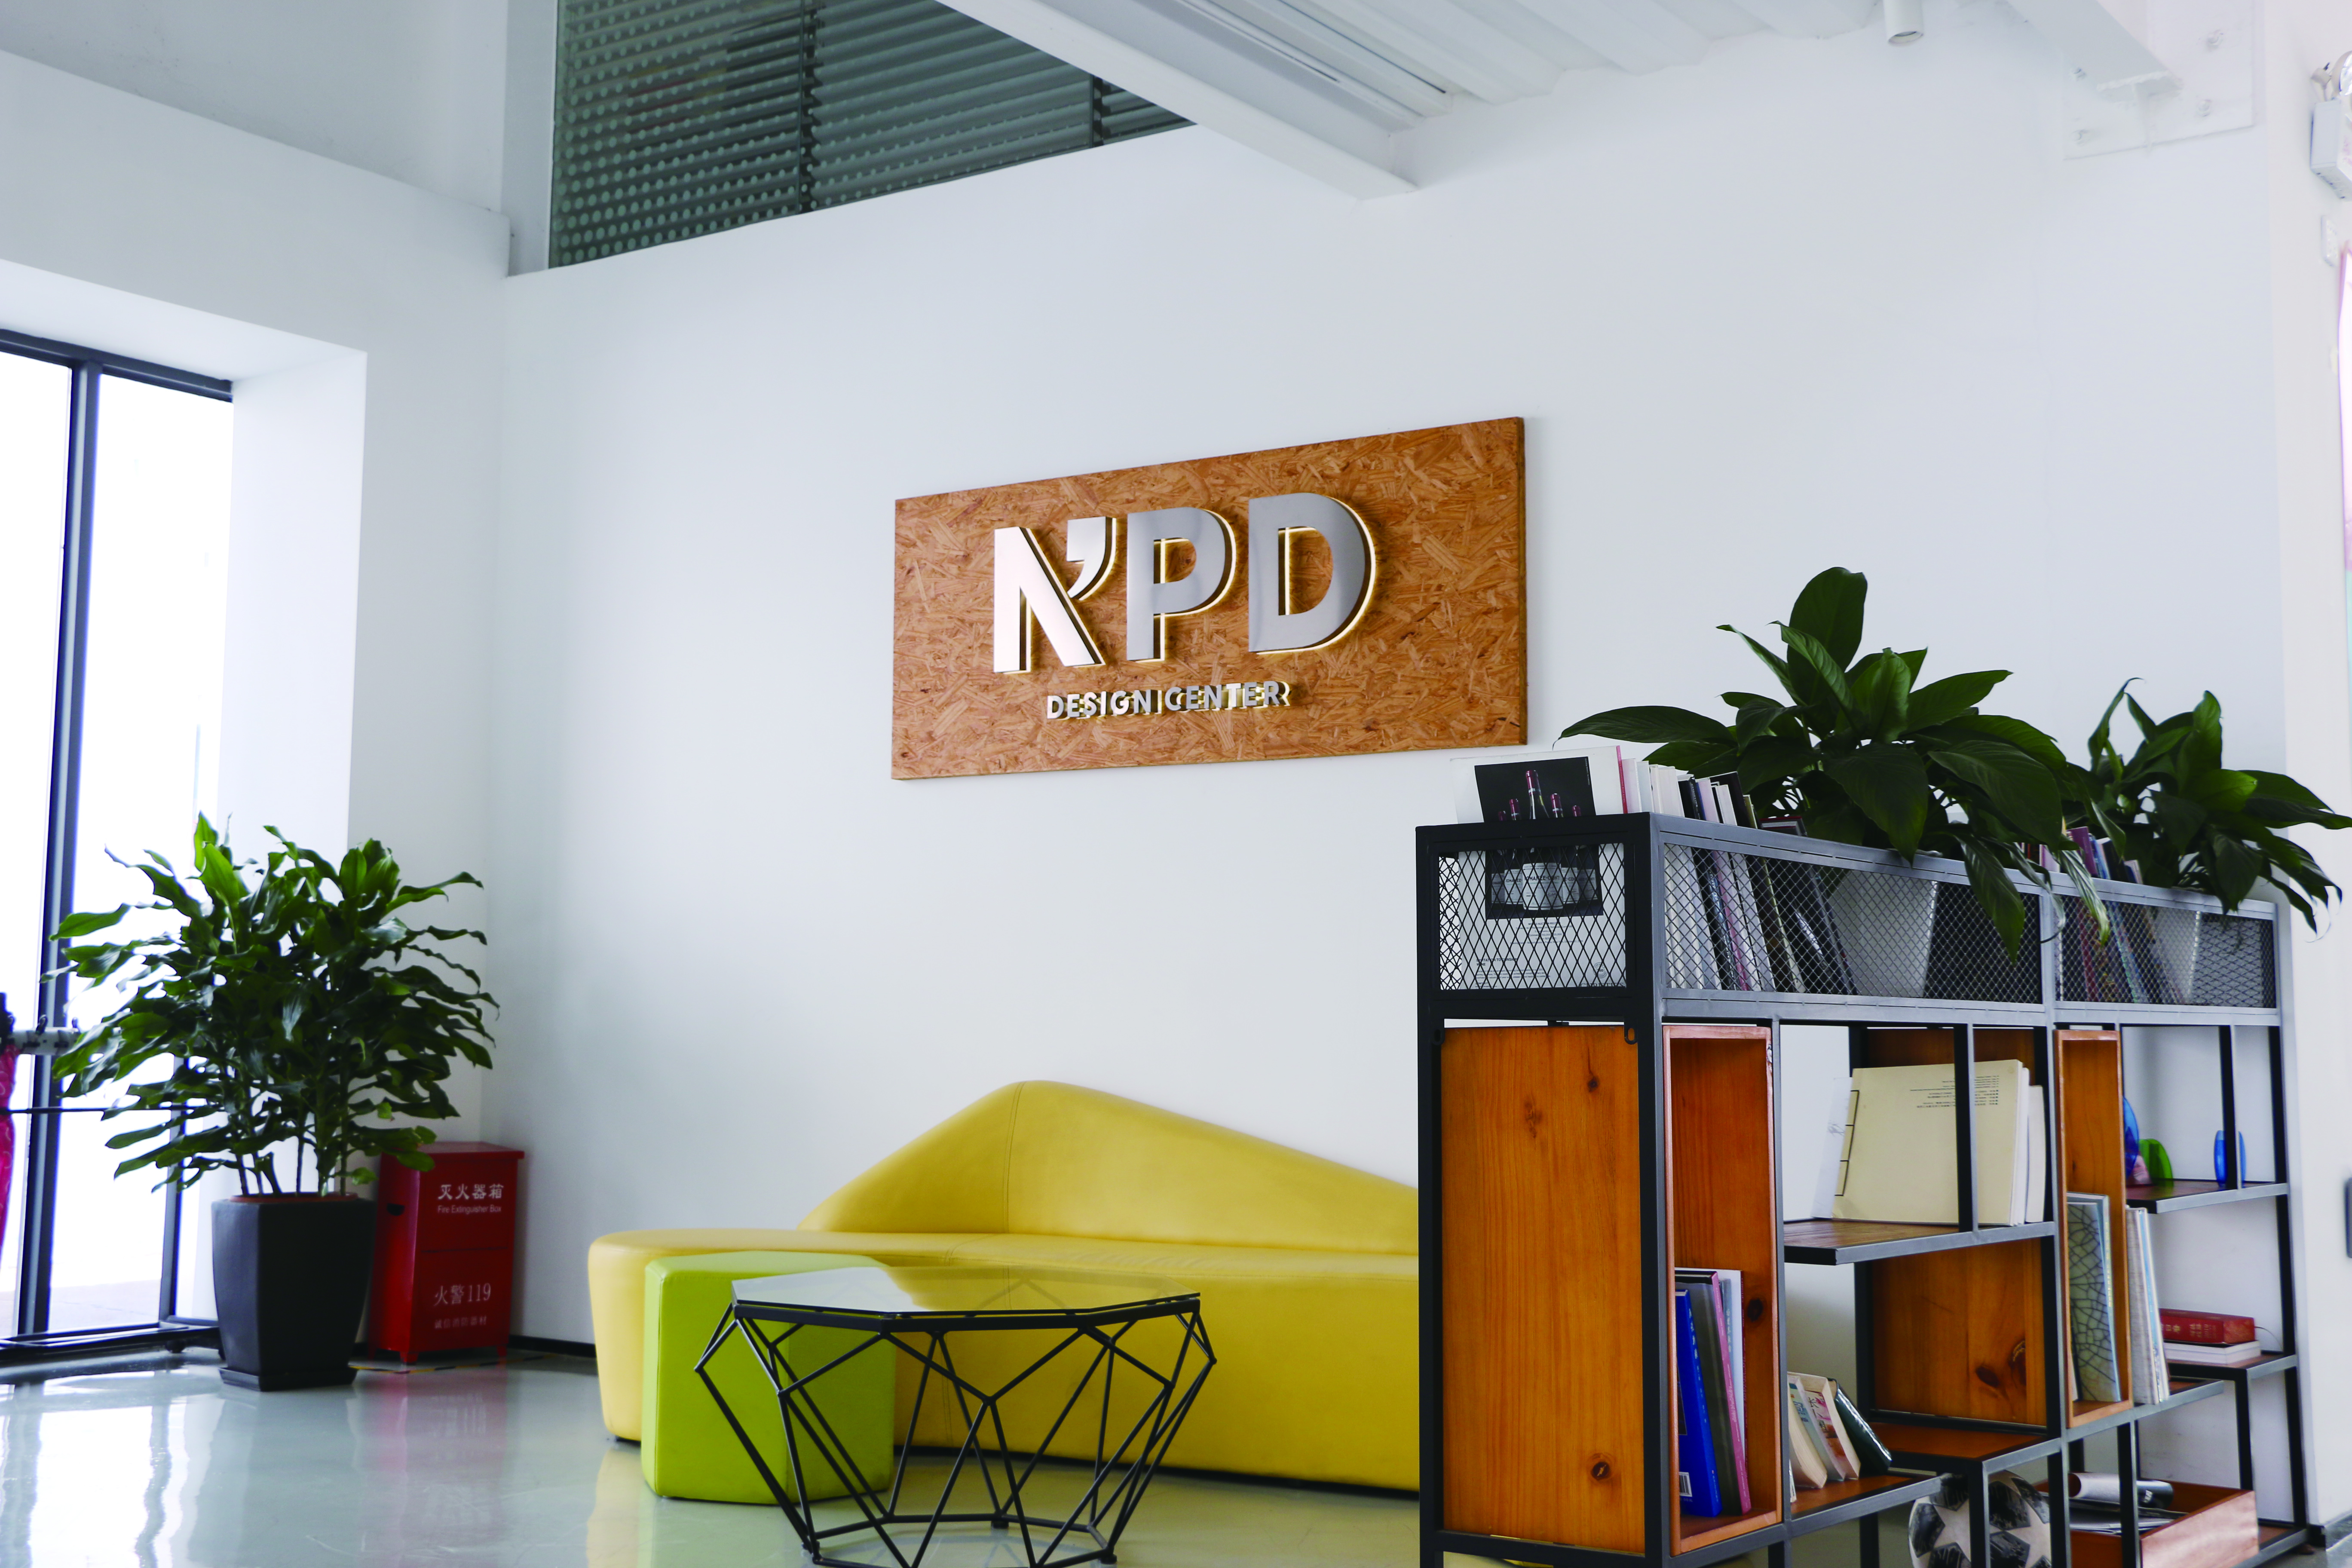  NPD Center